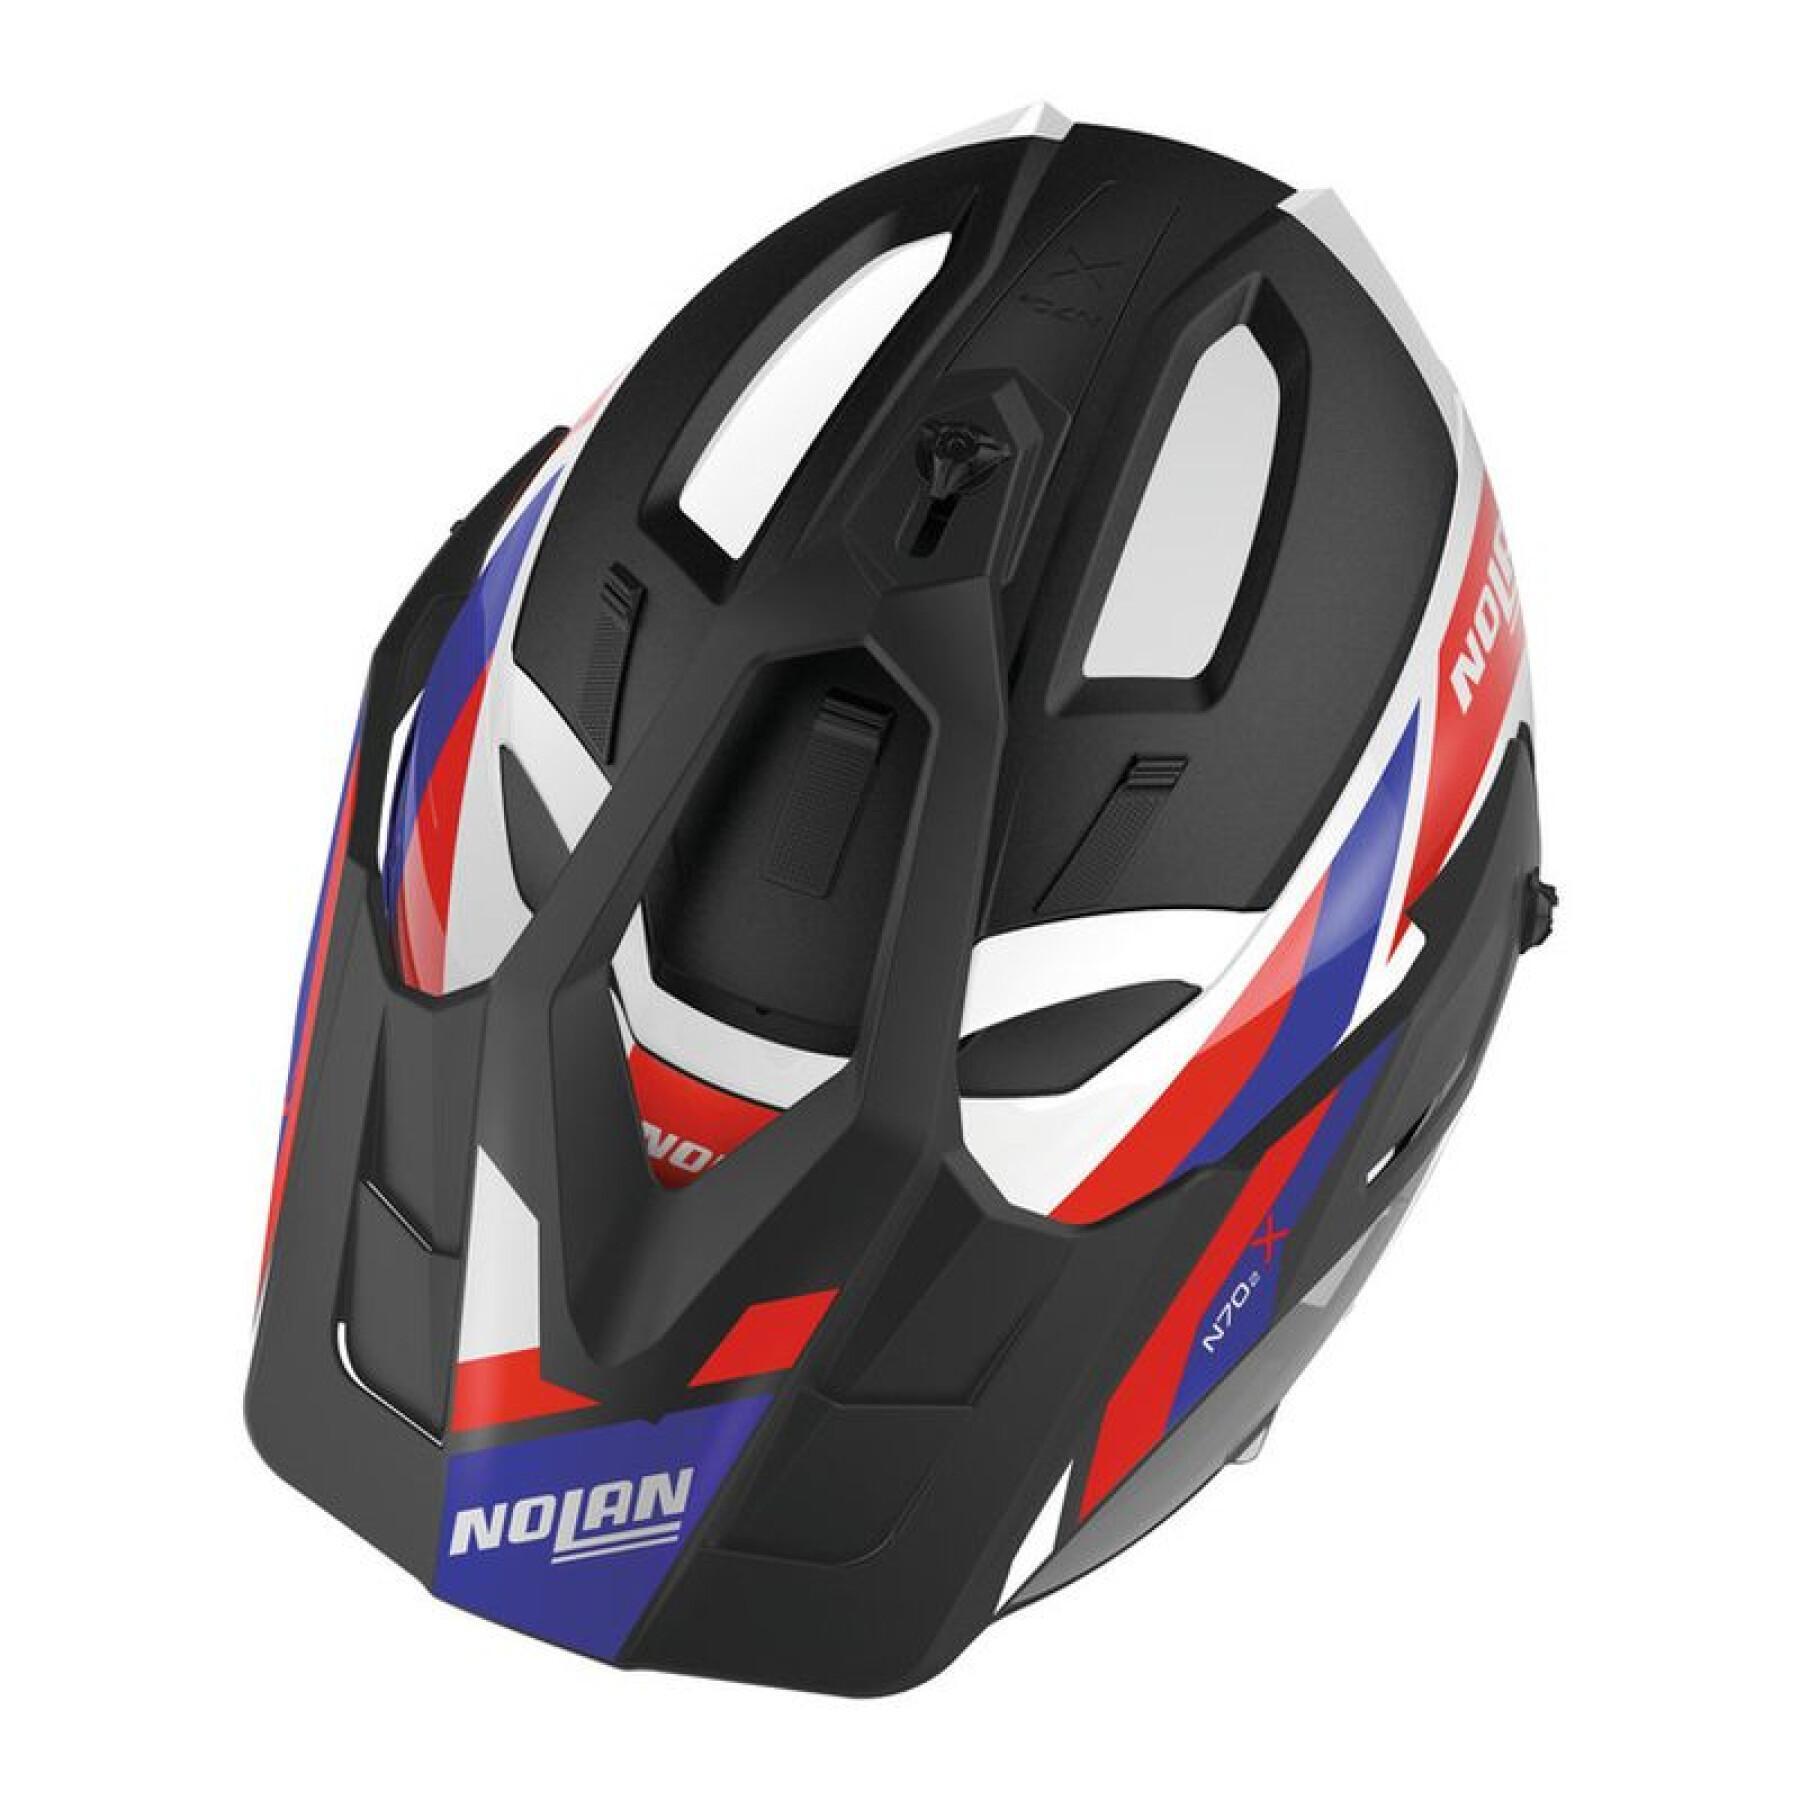 n70-2 x crossover helmask för motorcykel Nolan Grandes Alpes N-Com Metal 26